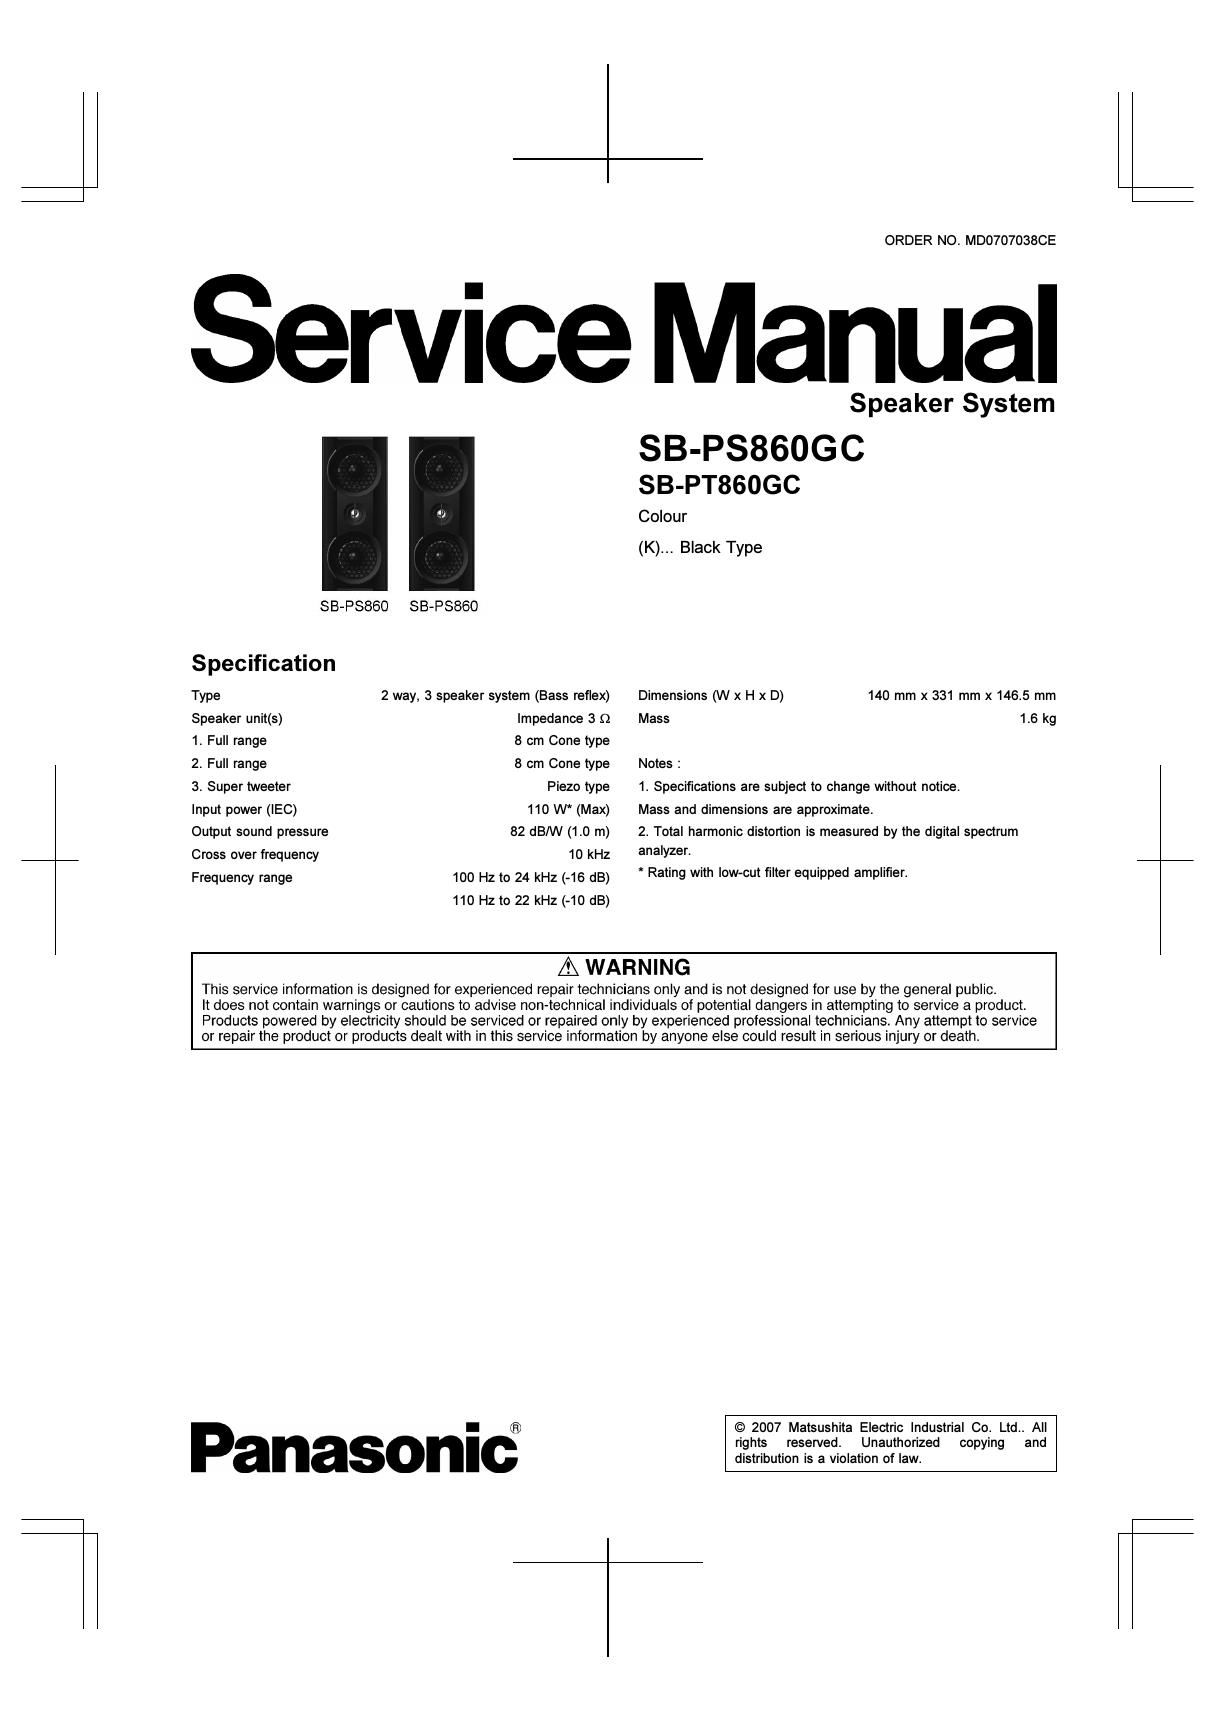 panasonic sb ps 860 gc service manual